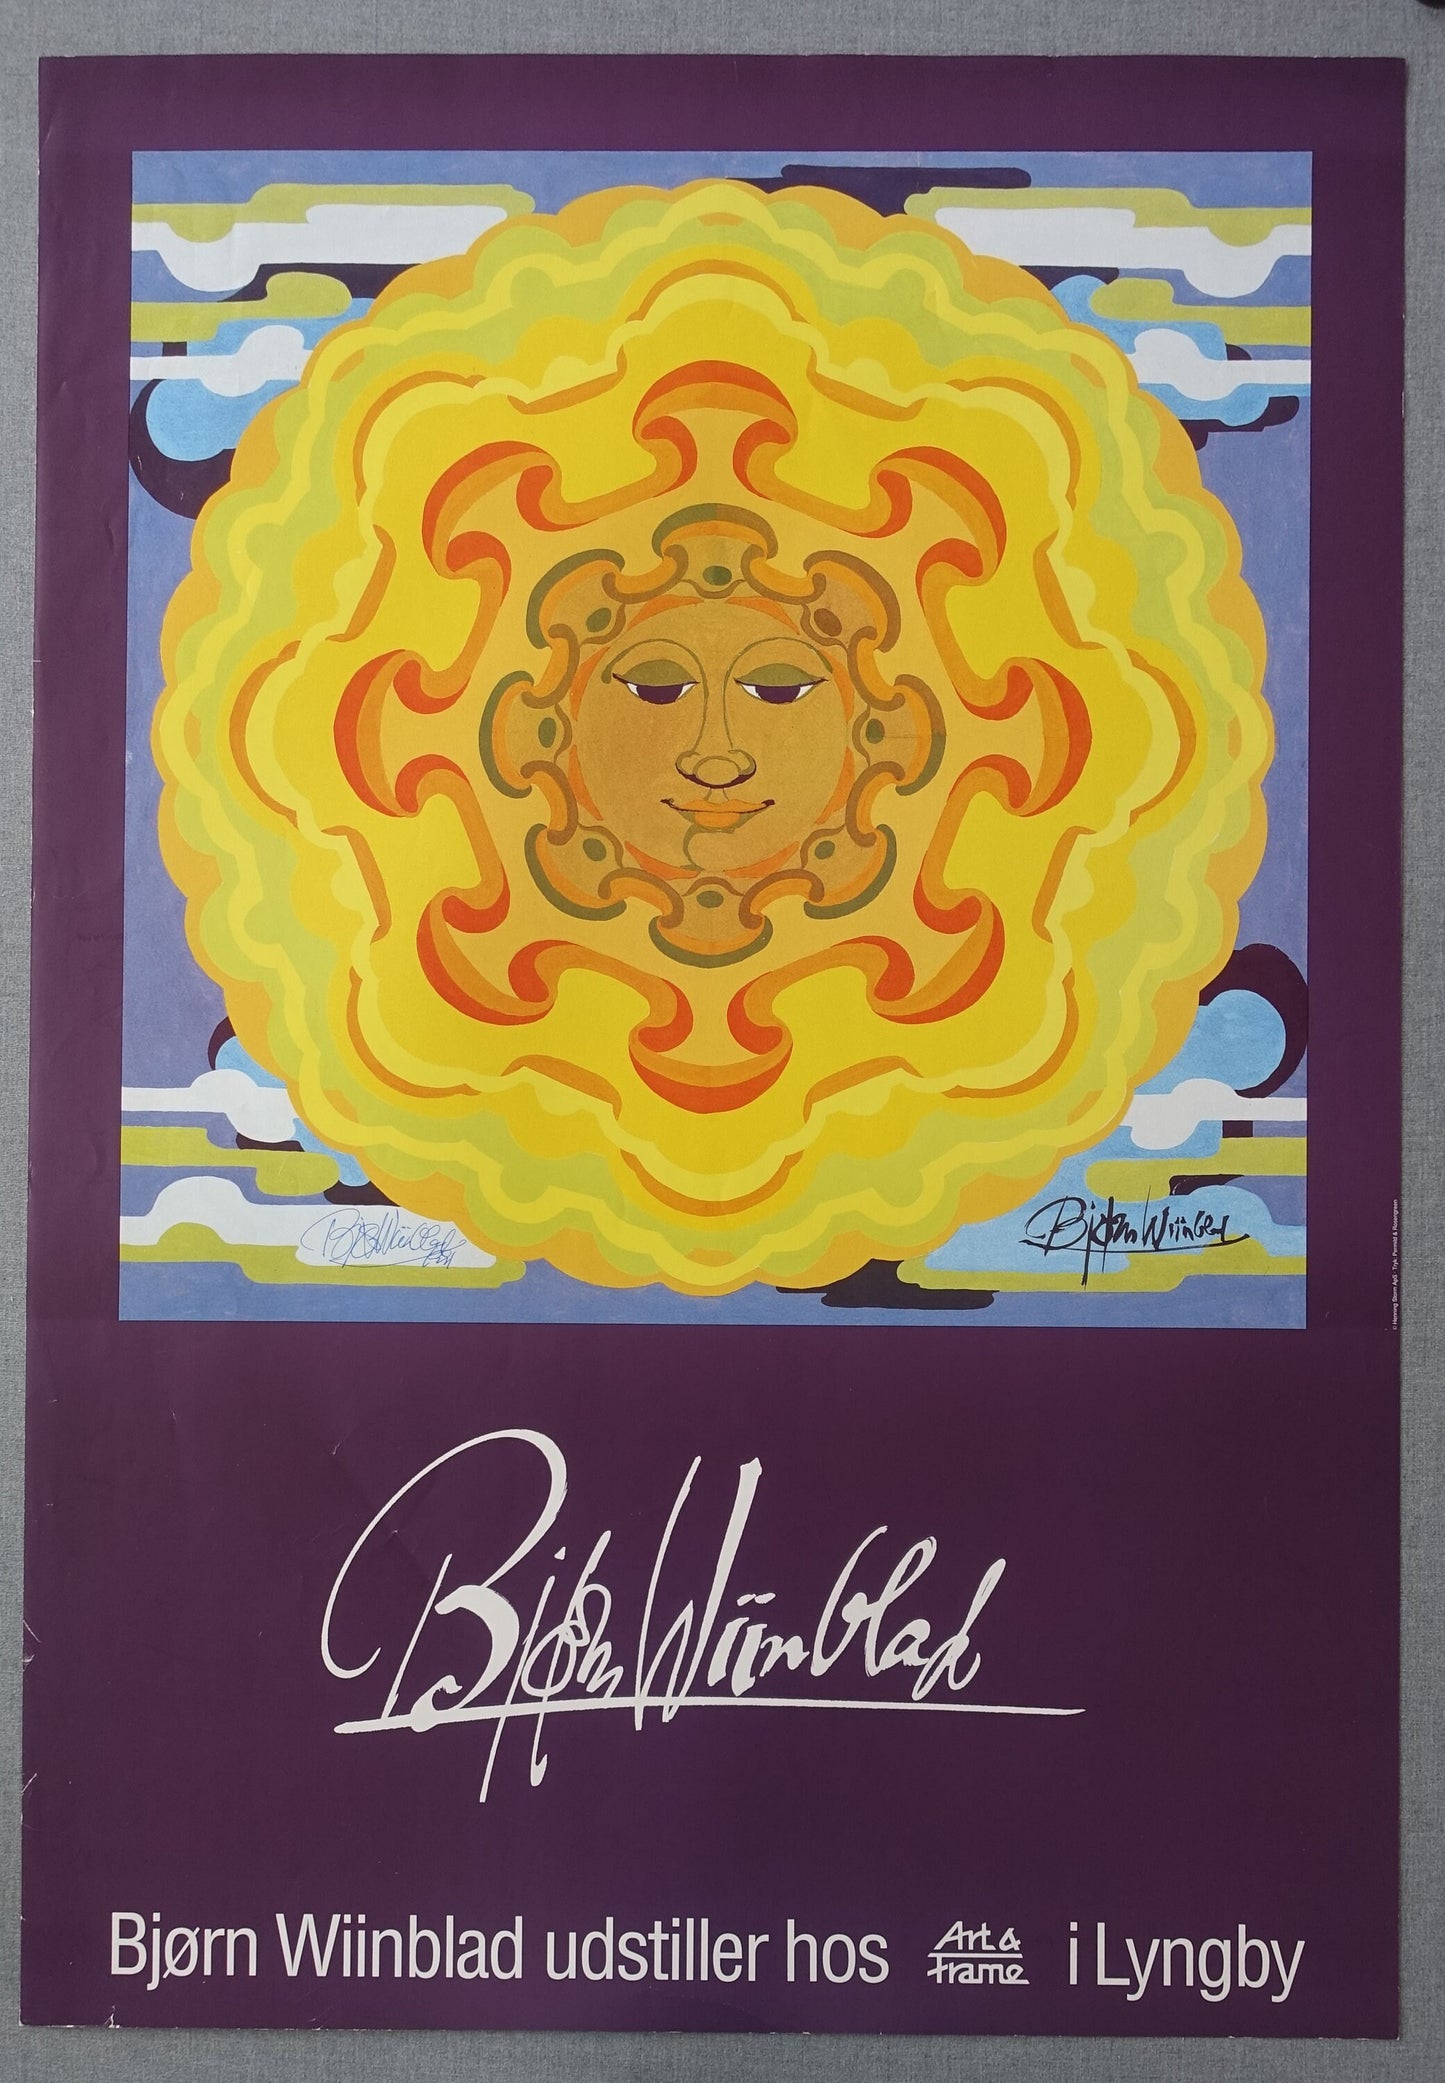 1991 Wiinblad Exhibition Art & Frame (signed) - Original Vintage Poster